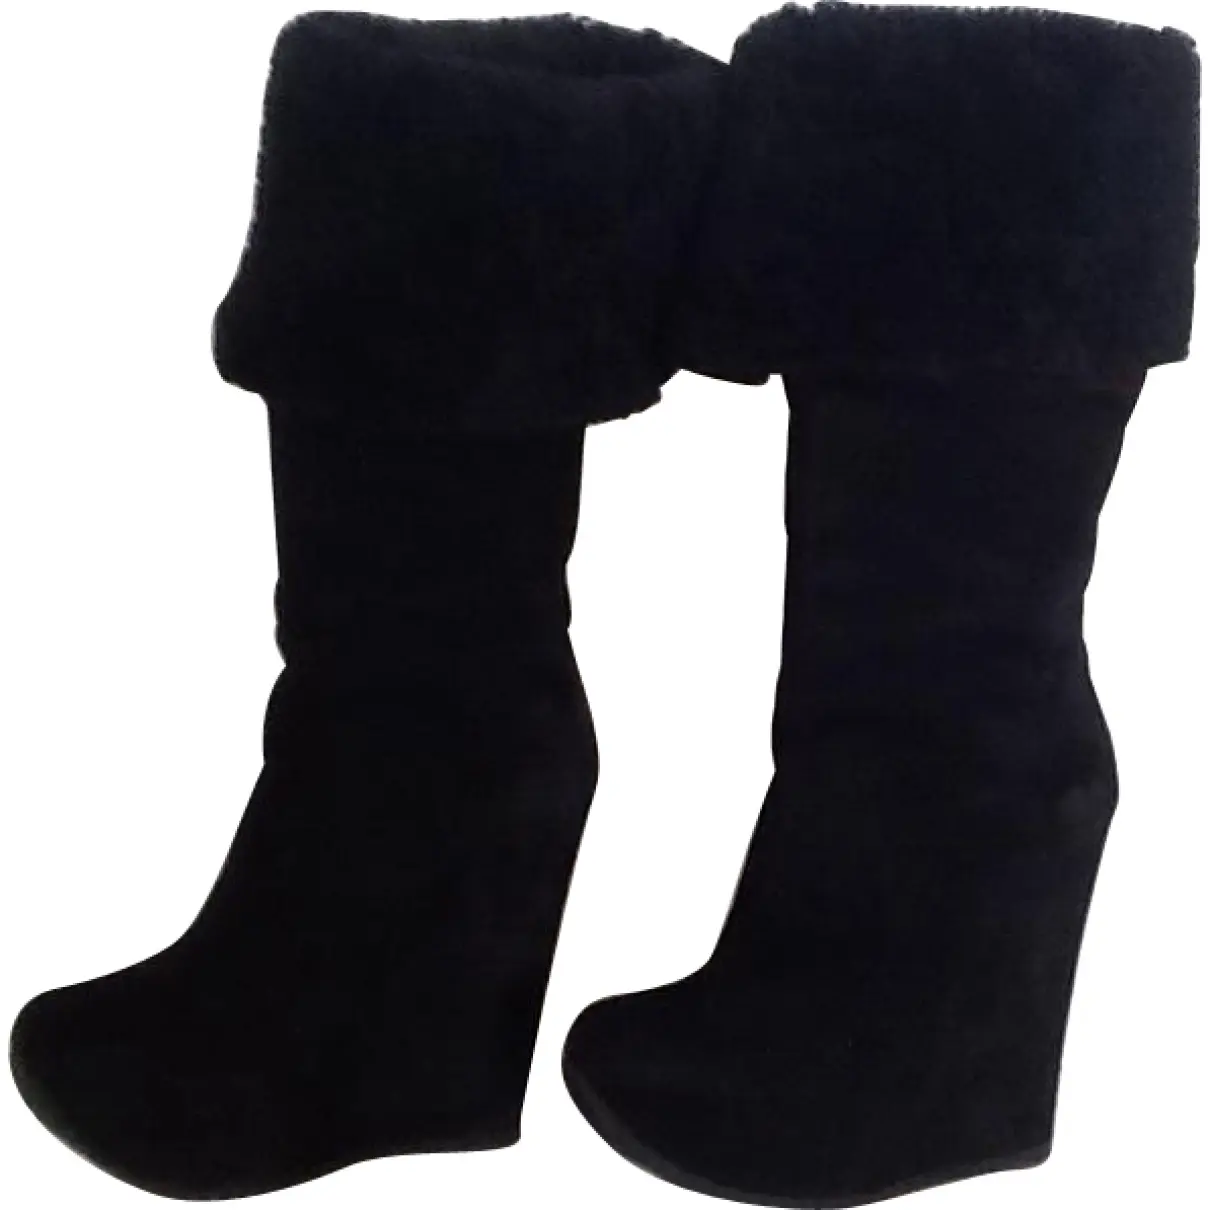 Black Boots Yves Saint Laurent